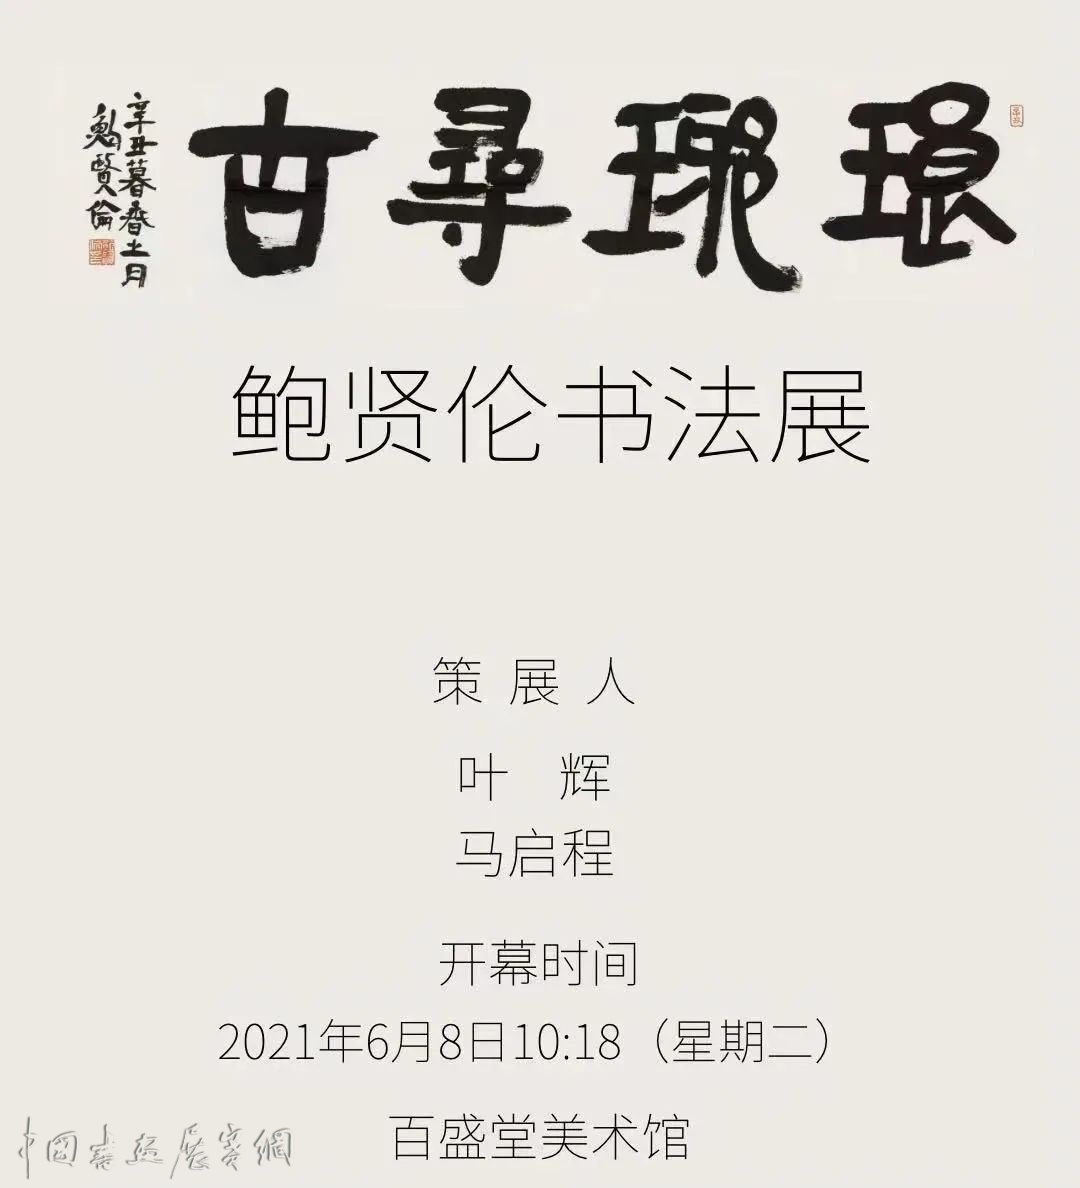 琅琊寻古·鲍贤伦书法展将在山东临沂开幕！